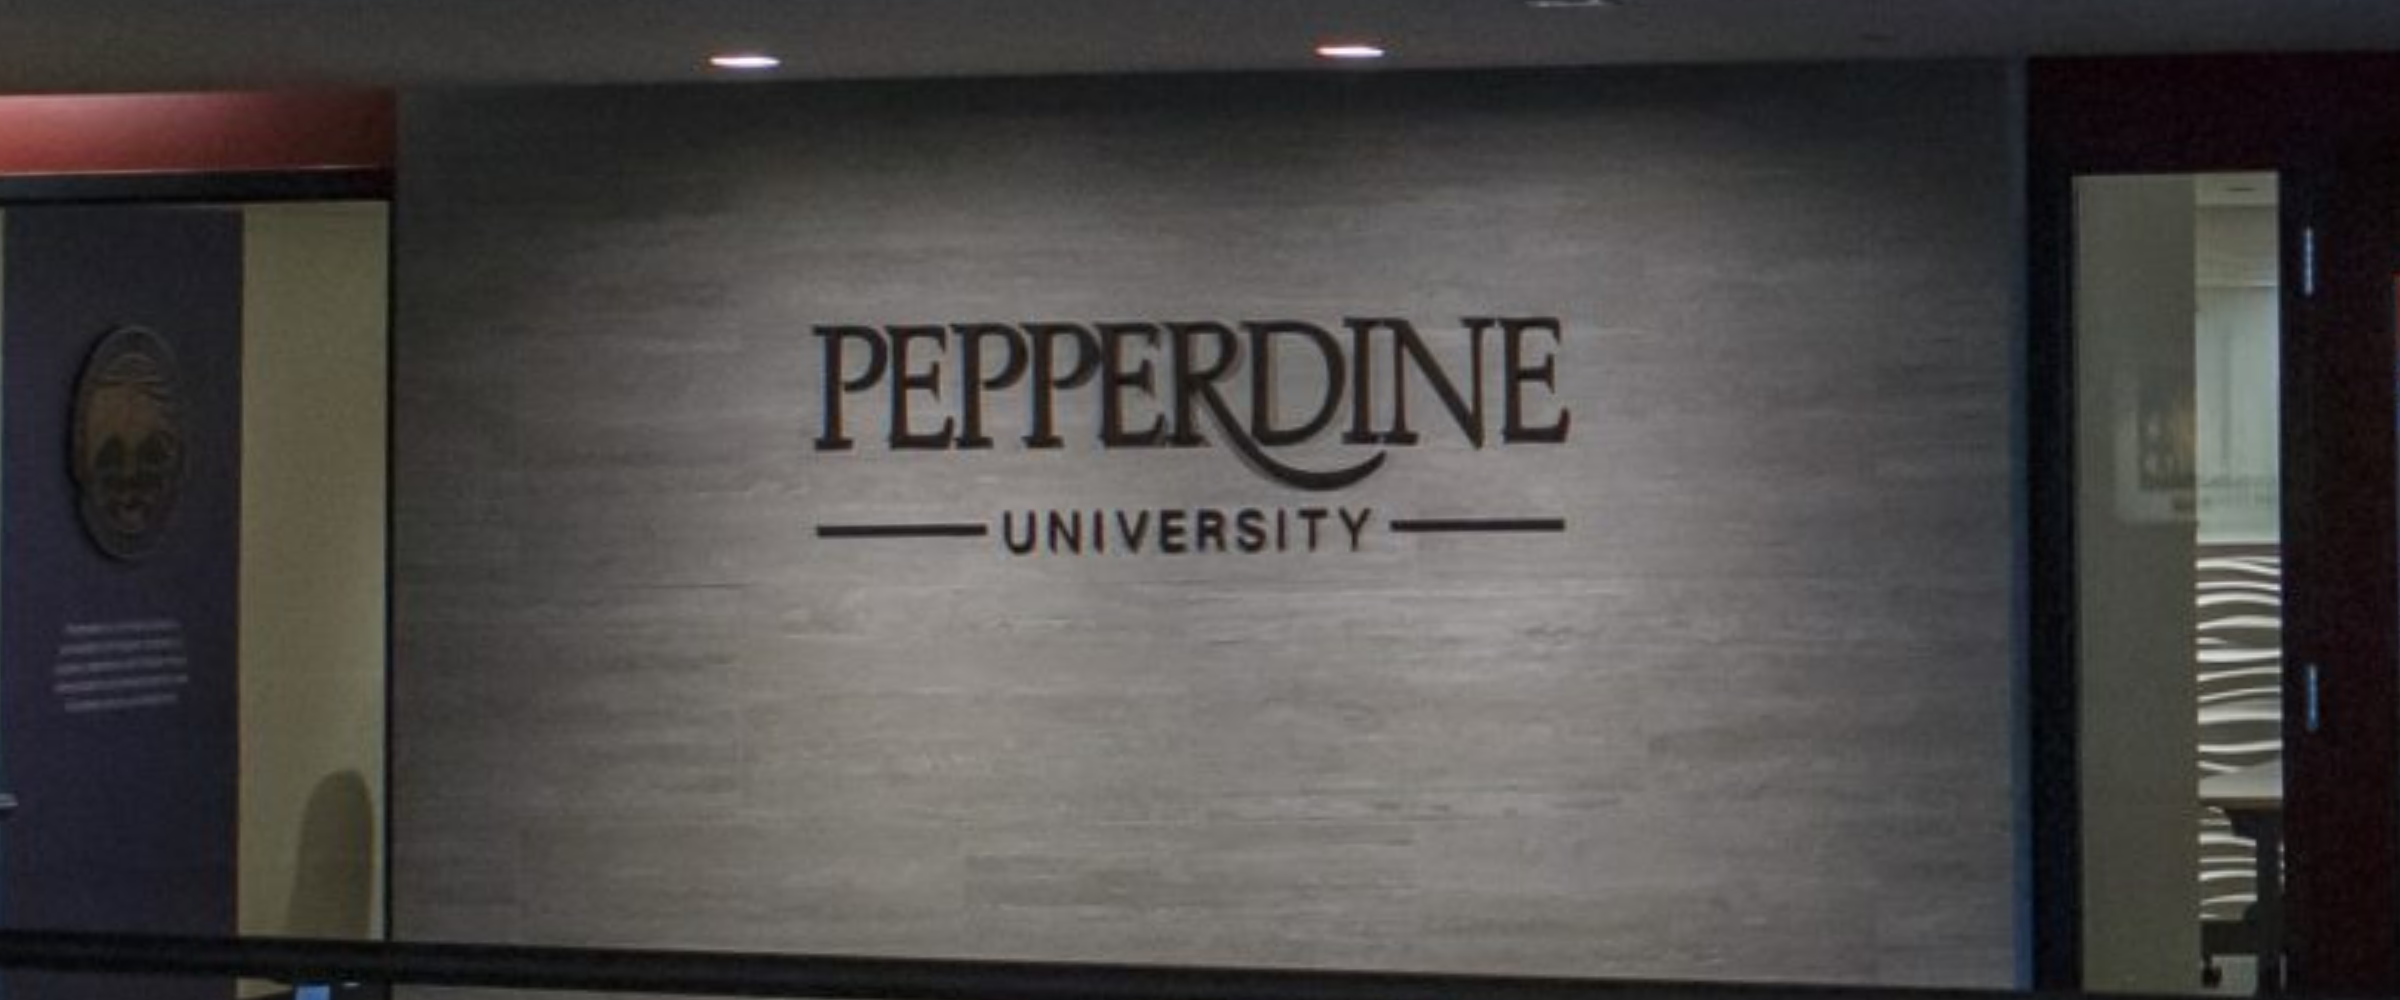 Pepperdine University Sign